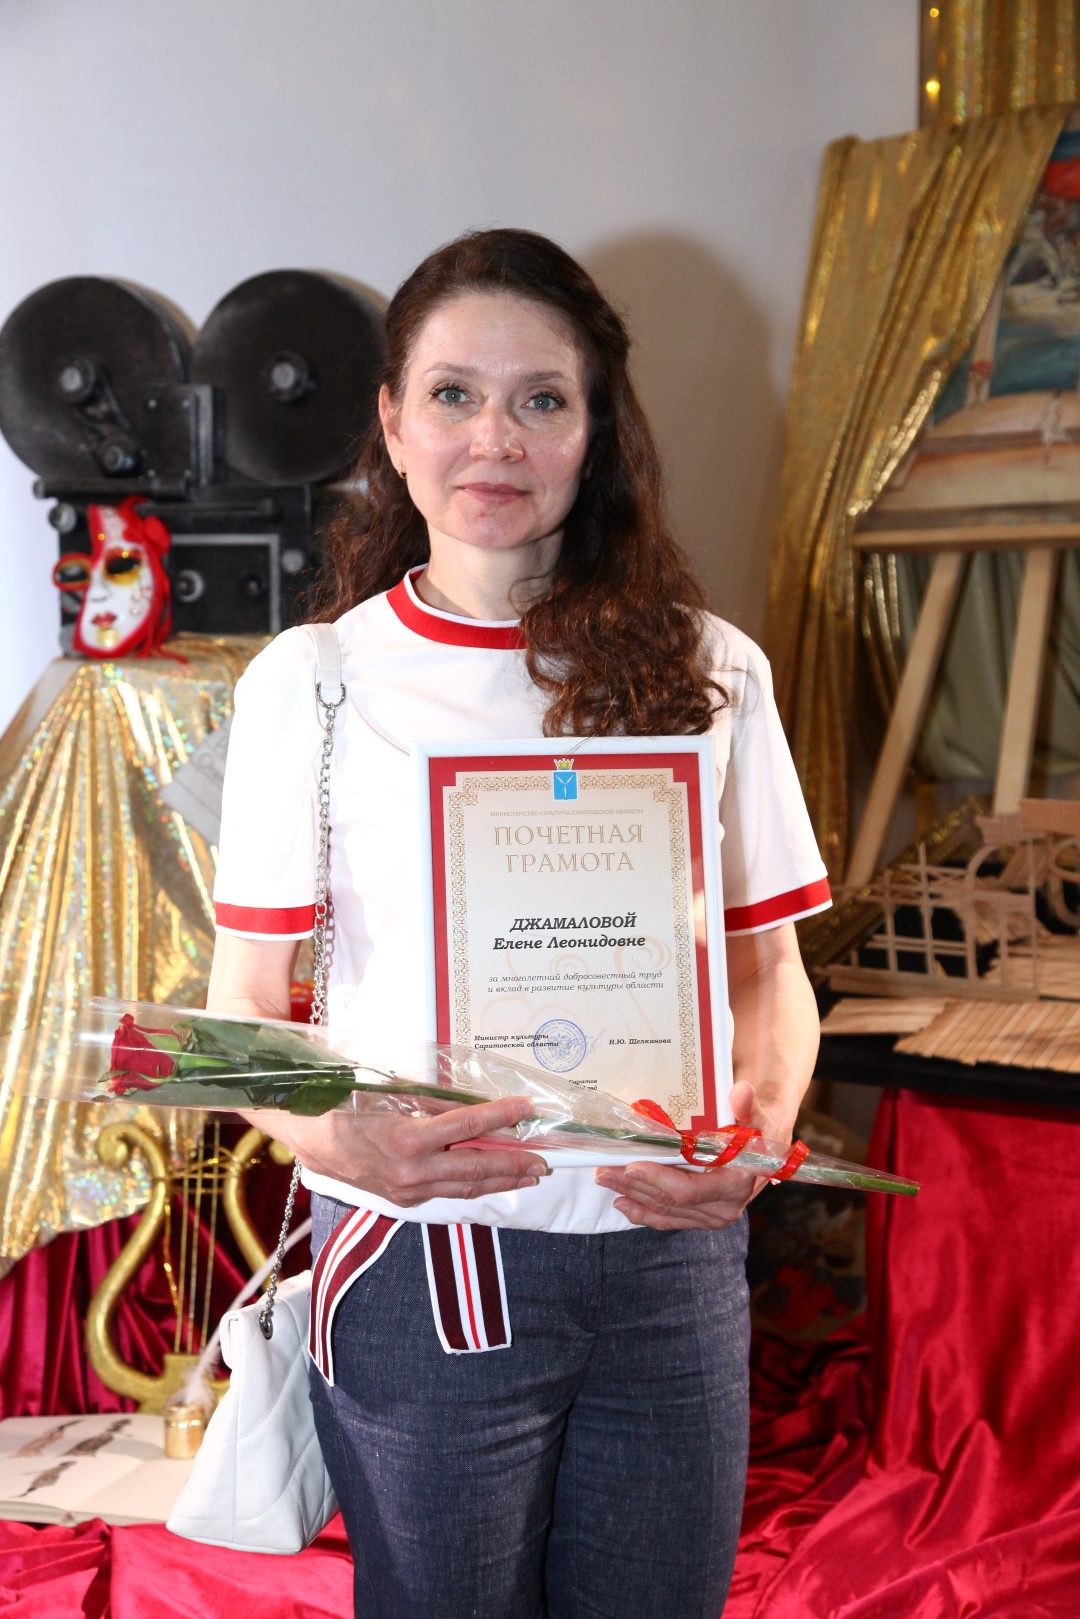 Поздравляем Джамалову Елену Леонидовну с получением Почетной грамоты Министерства культуры Саратовской области